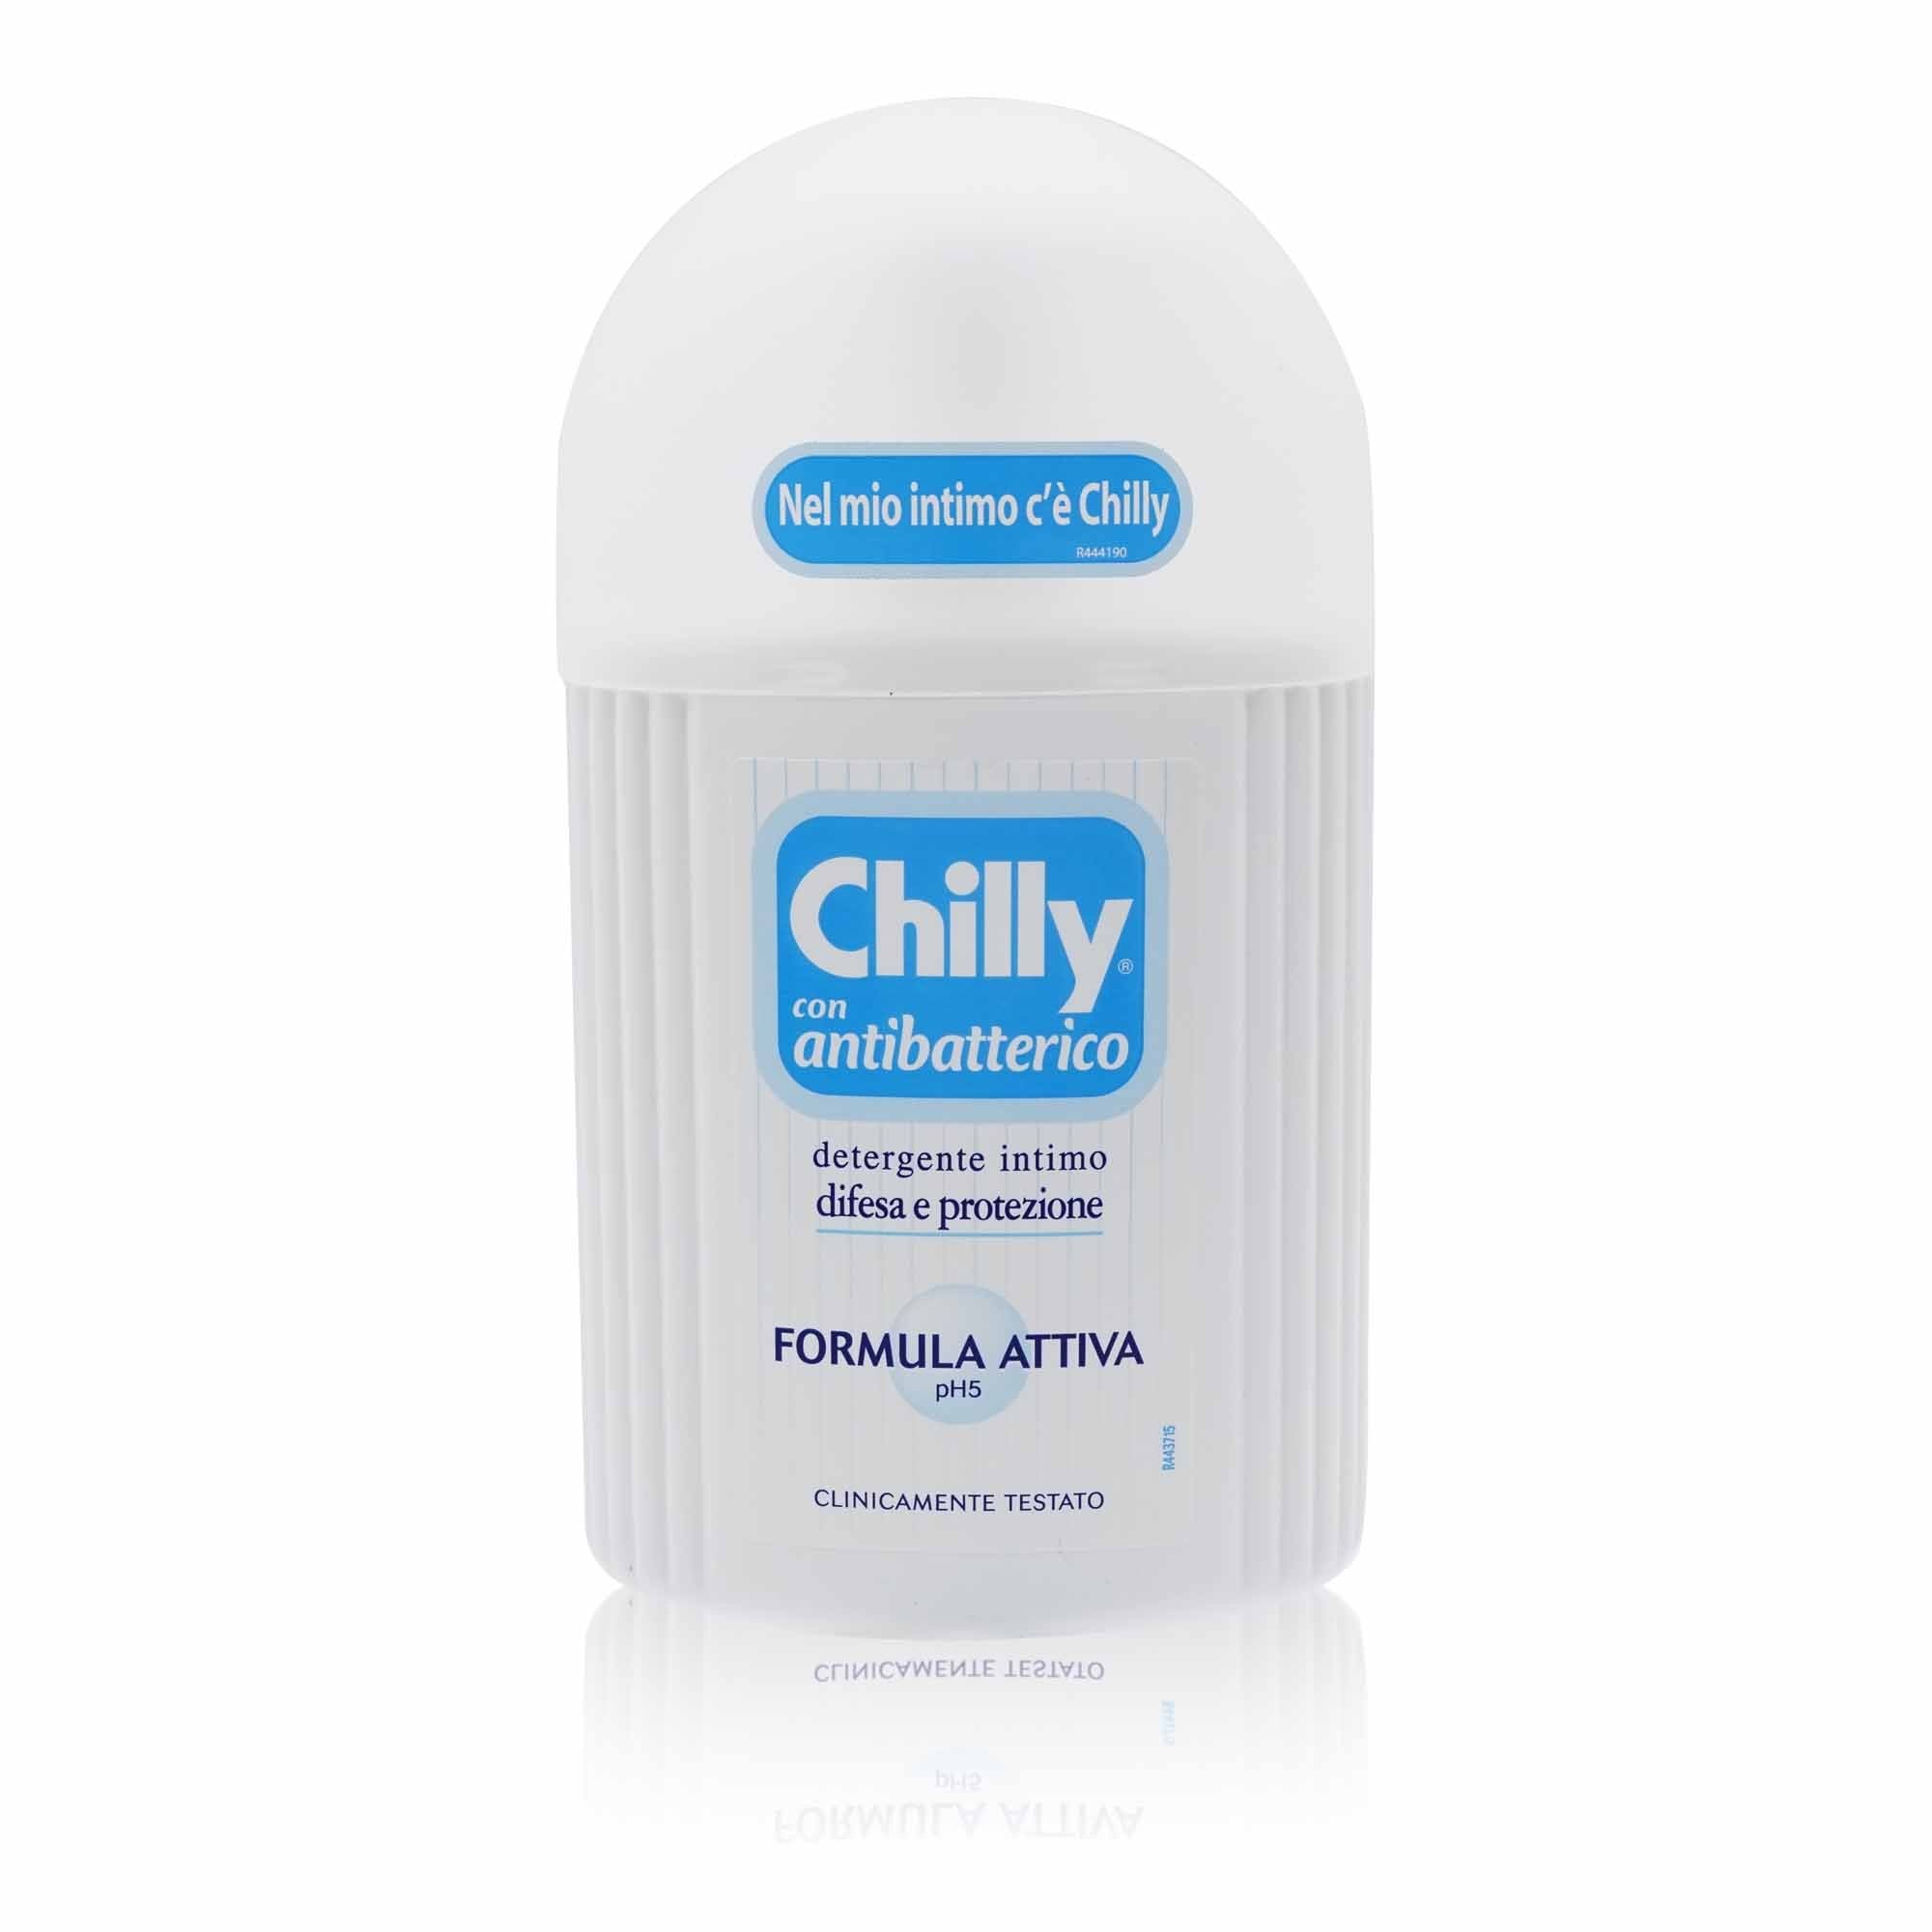 CHILLY Detergente intimo antibatterico – Intimseife antibakteriell - 0,200l - italienisch-einkaufen.de